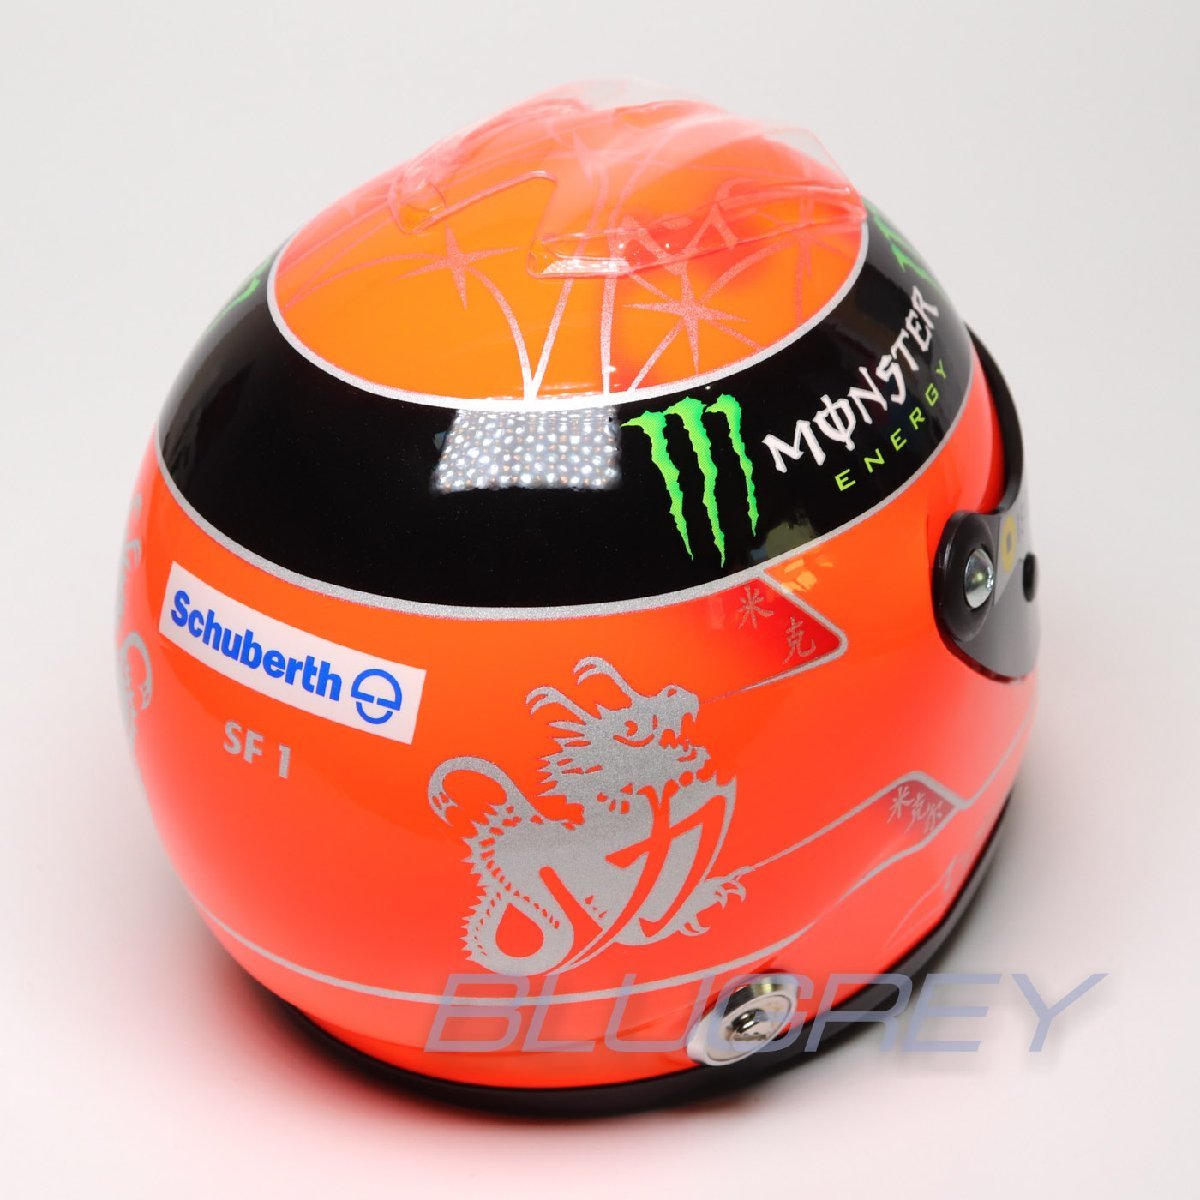 ミニ ヘルメット 1/2 ミハエル・シューマッハ 2012年シーズン メルセデスGP F1 SCHUBERTH M. SCHUMACHER レプリカ_画像2